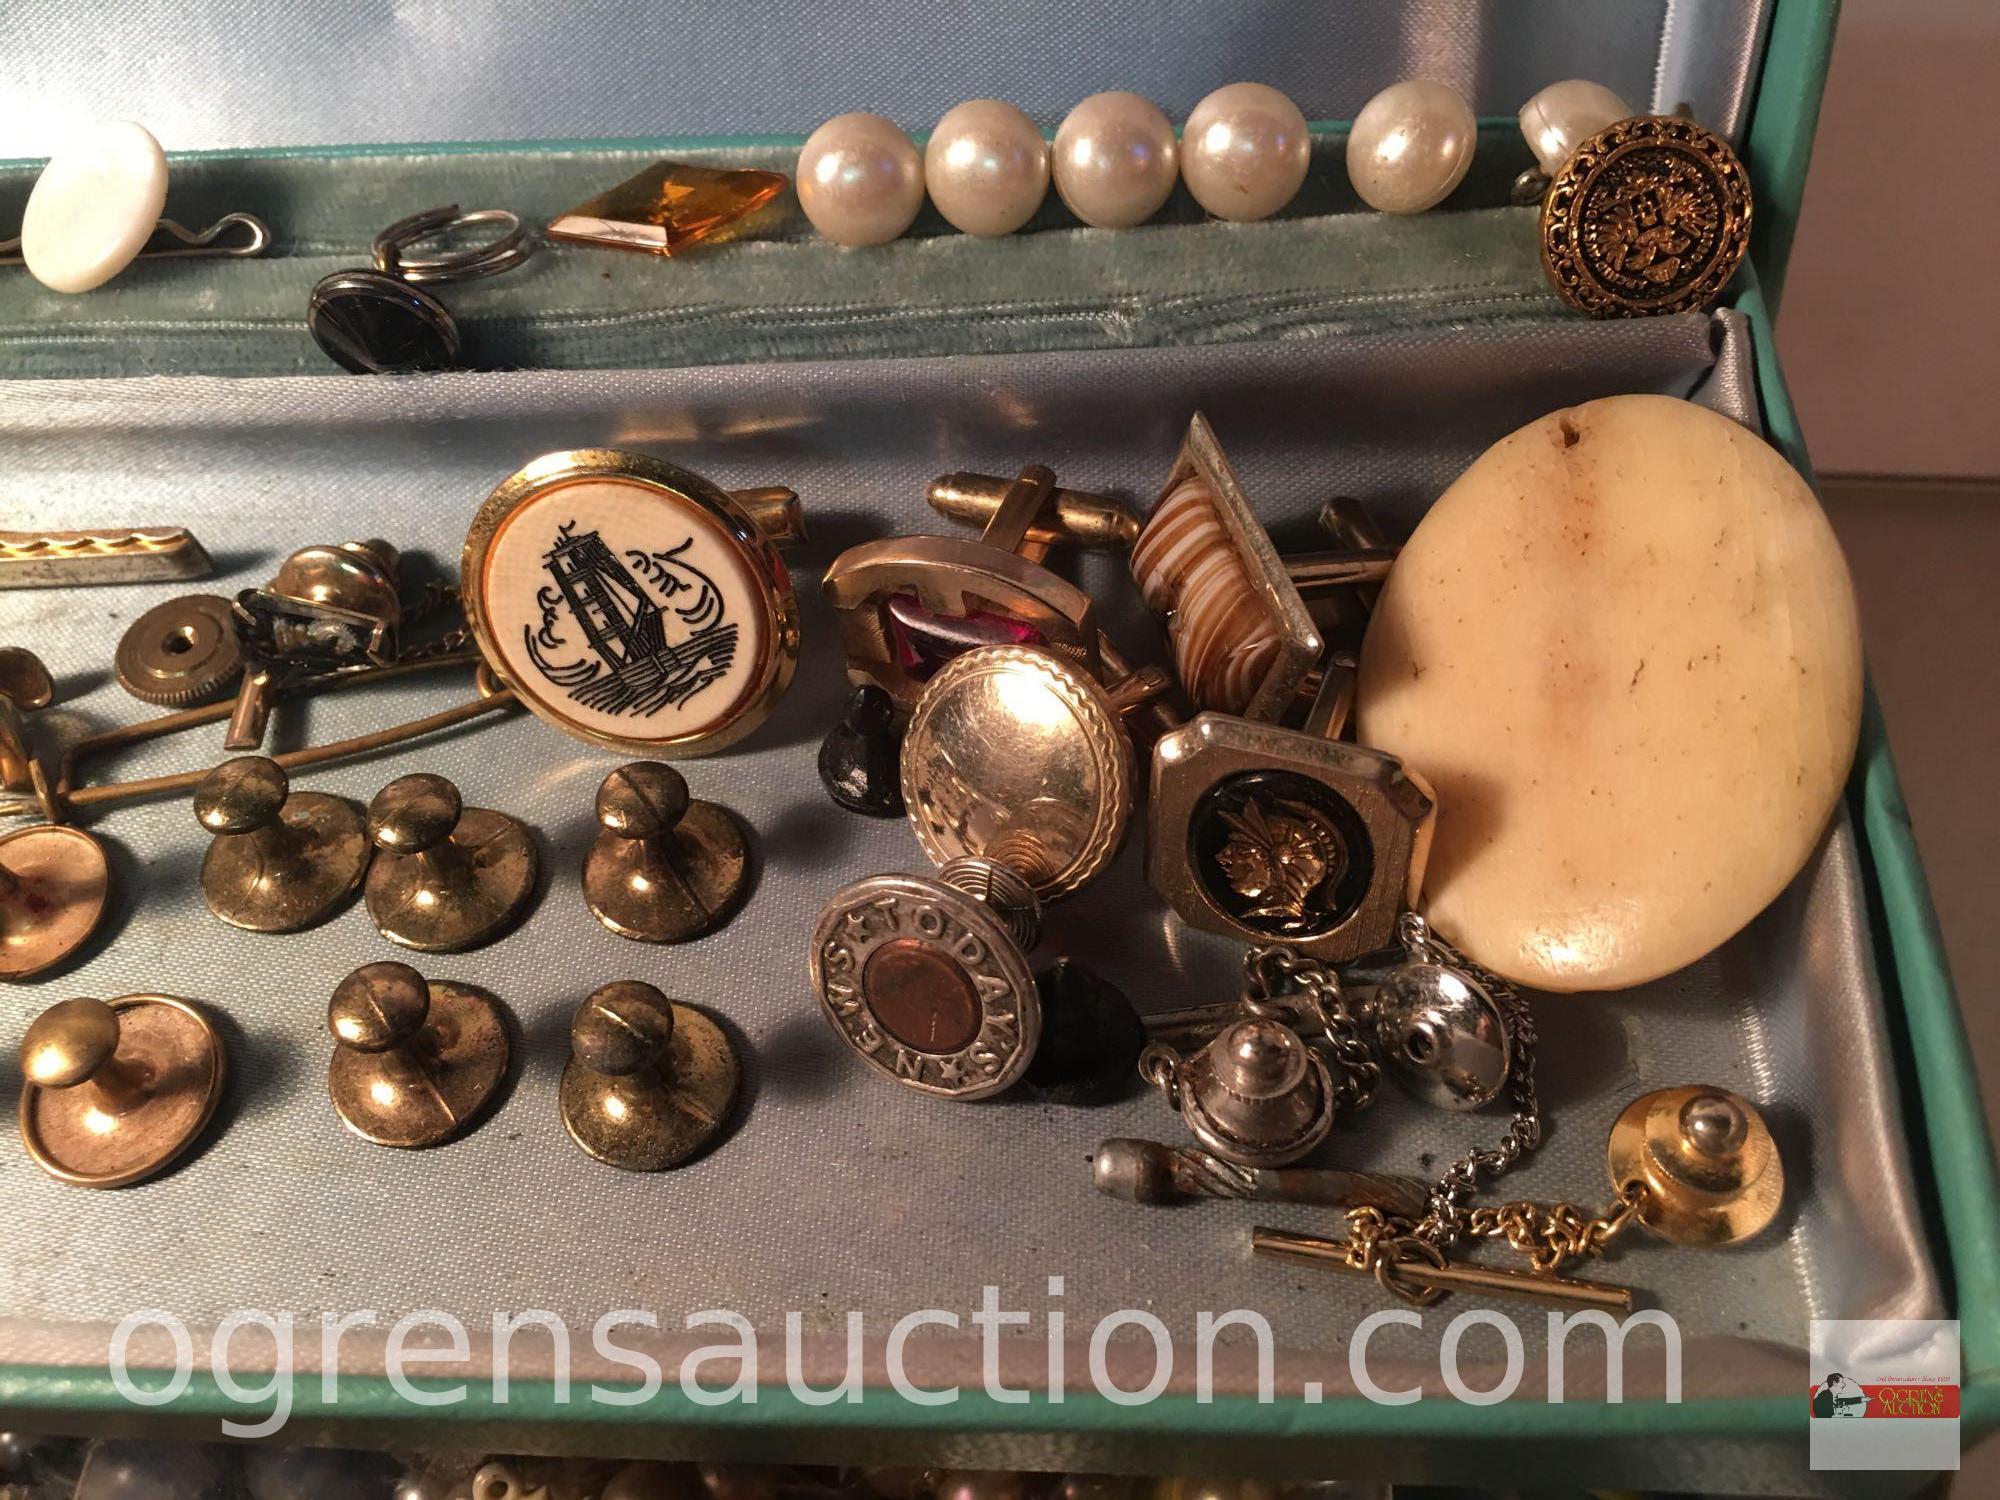 Jewelry - Vintage jewelry box w/ misc. jewelry and buttons, 9.5"w